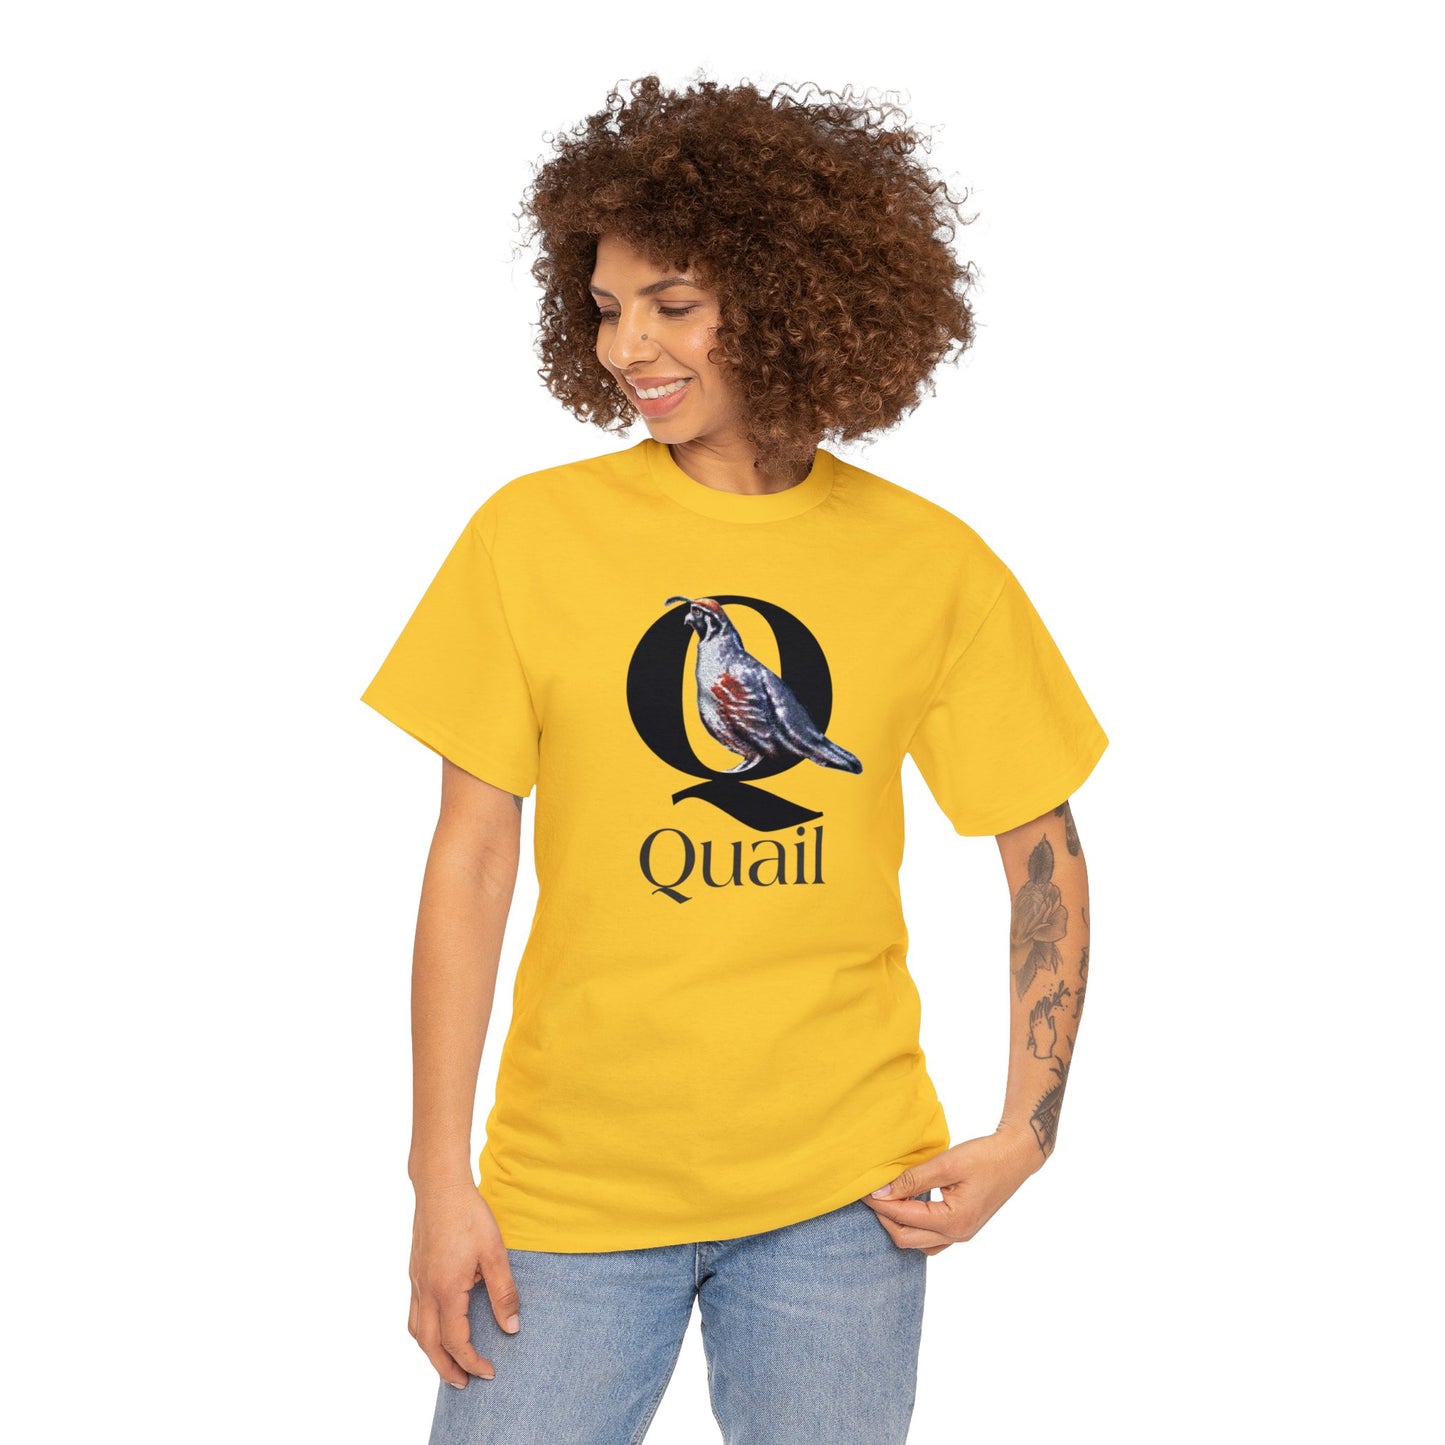 Q is for Quail t-shirt, Quail Drawing T-Shirt, Quail animal t-shirt, animal alphabet Q, animal